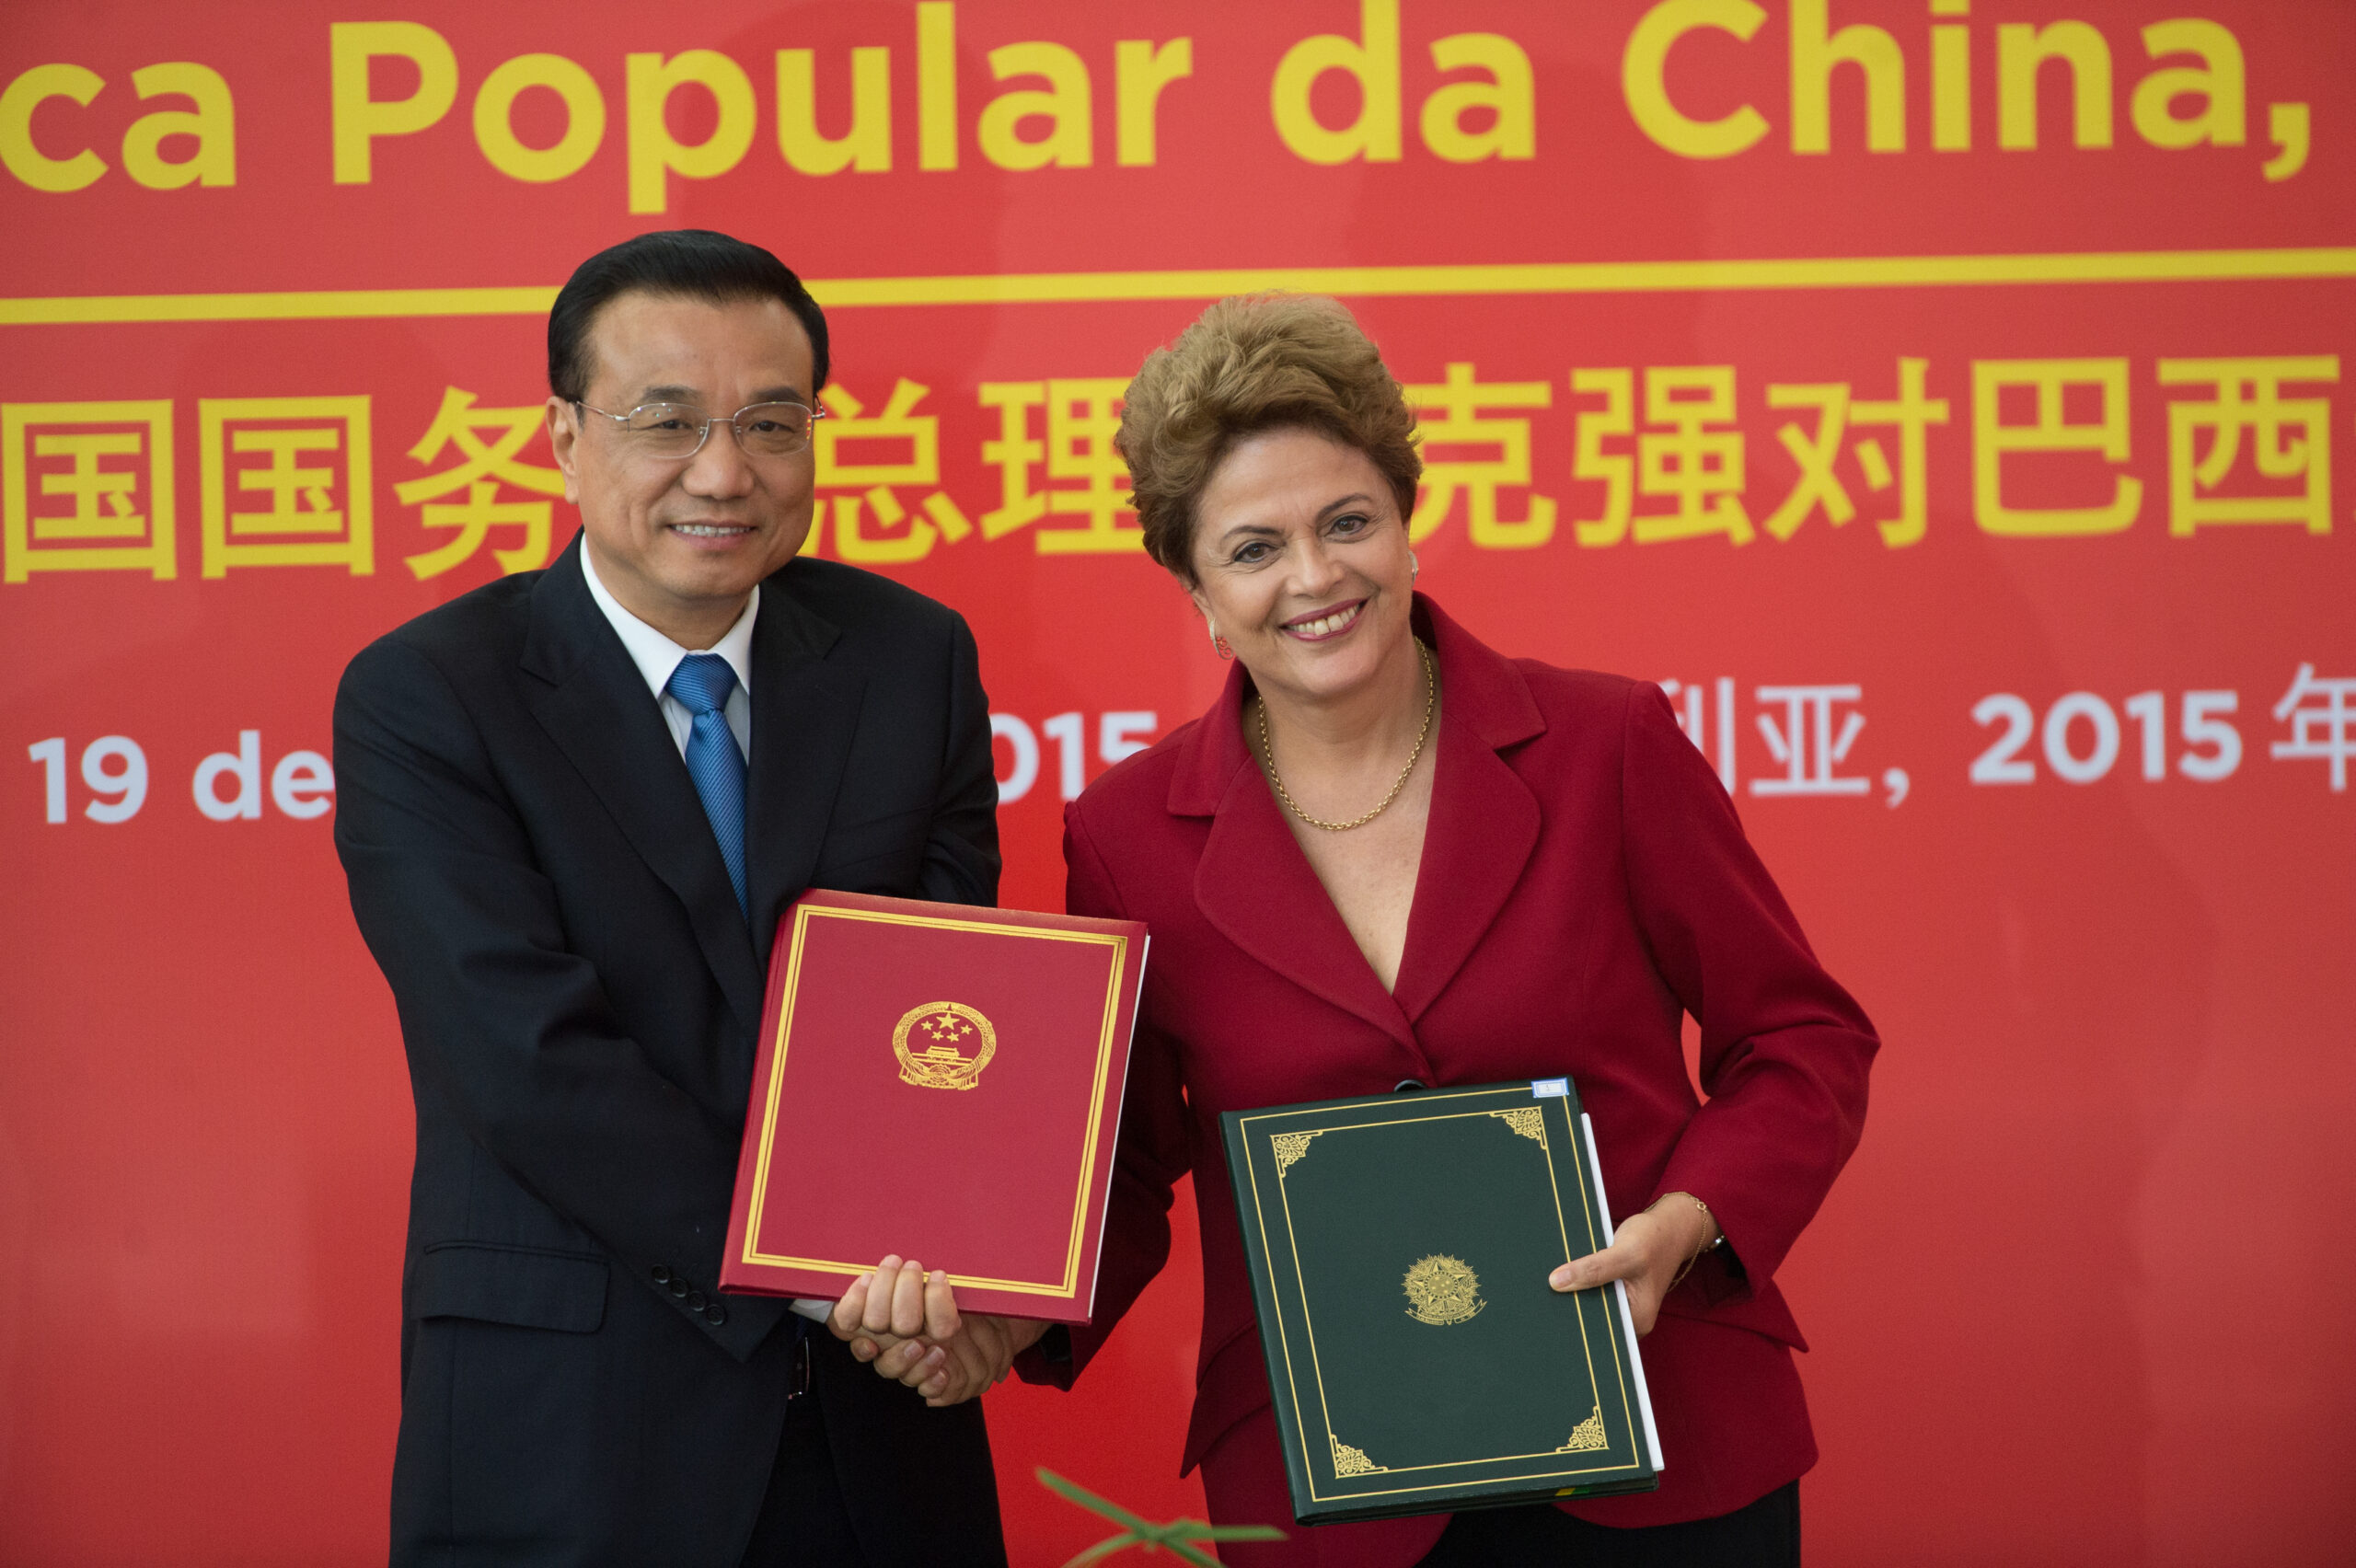 China e Brasil: História de uma parceria estratégica - Vermelho